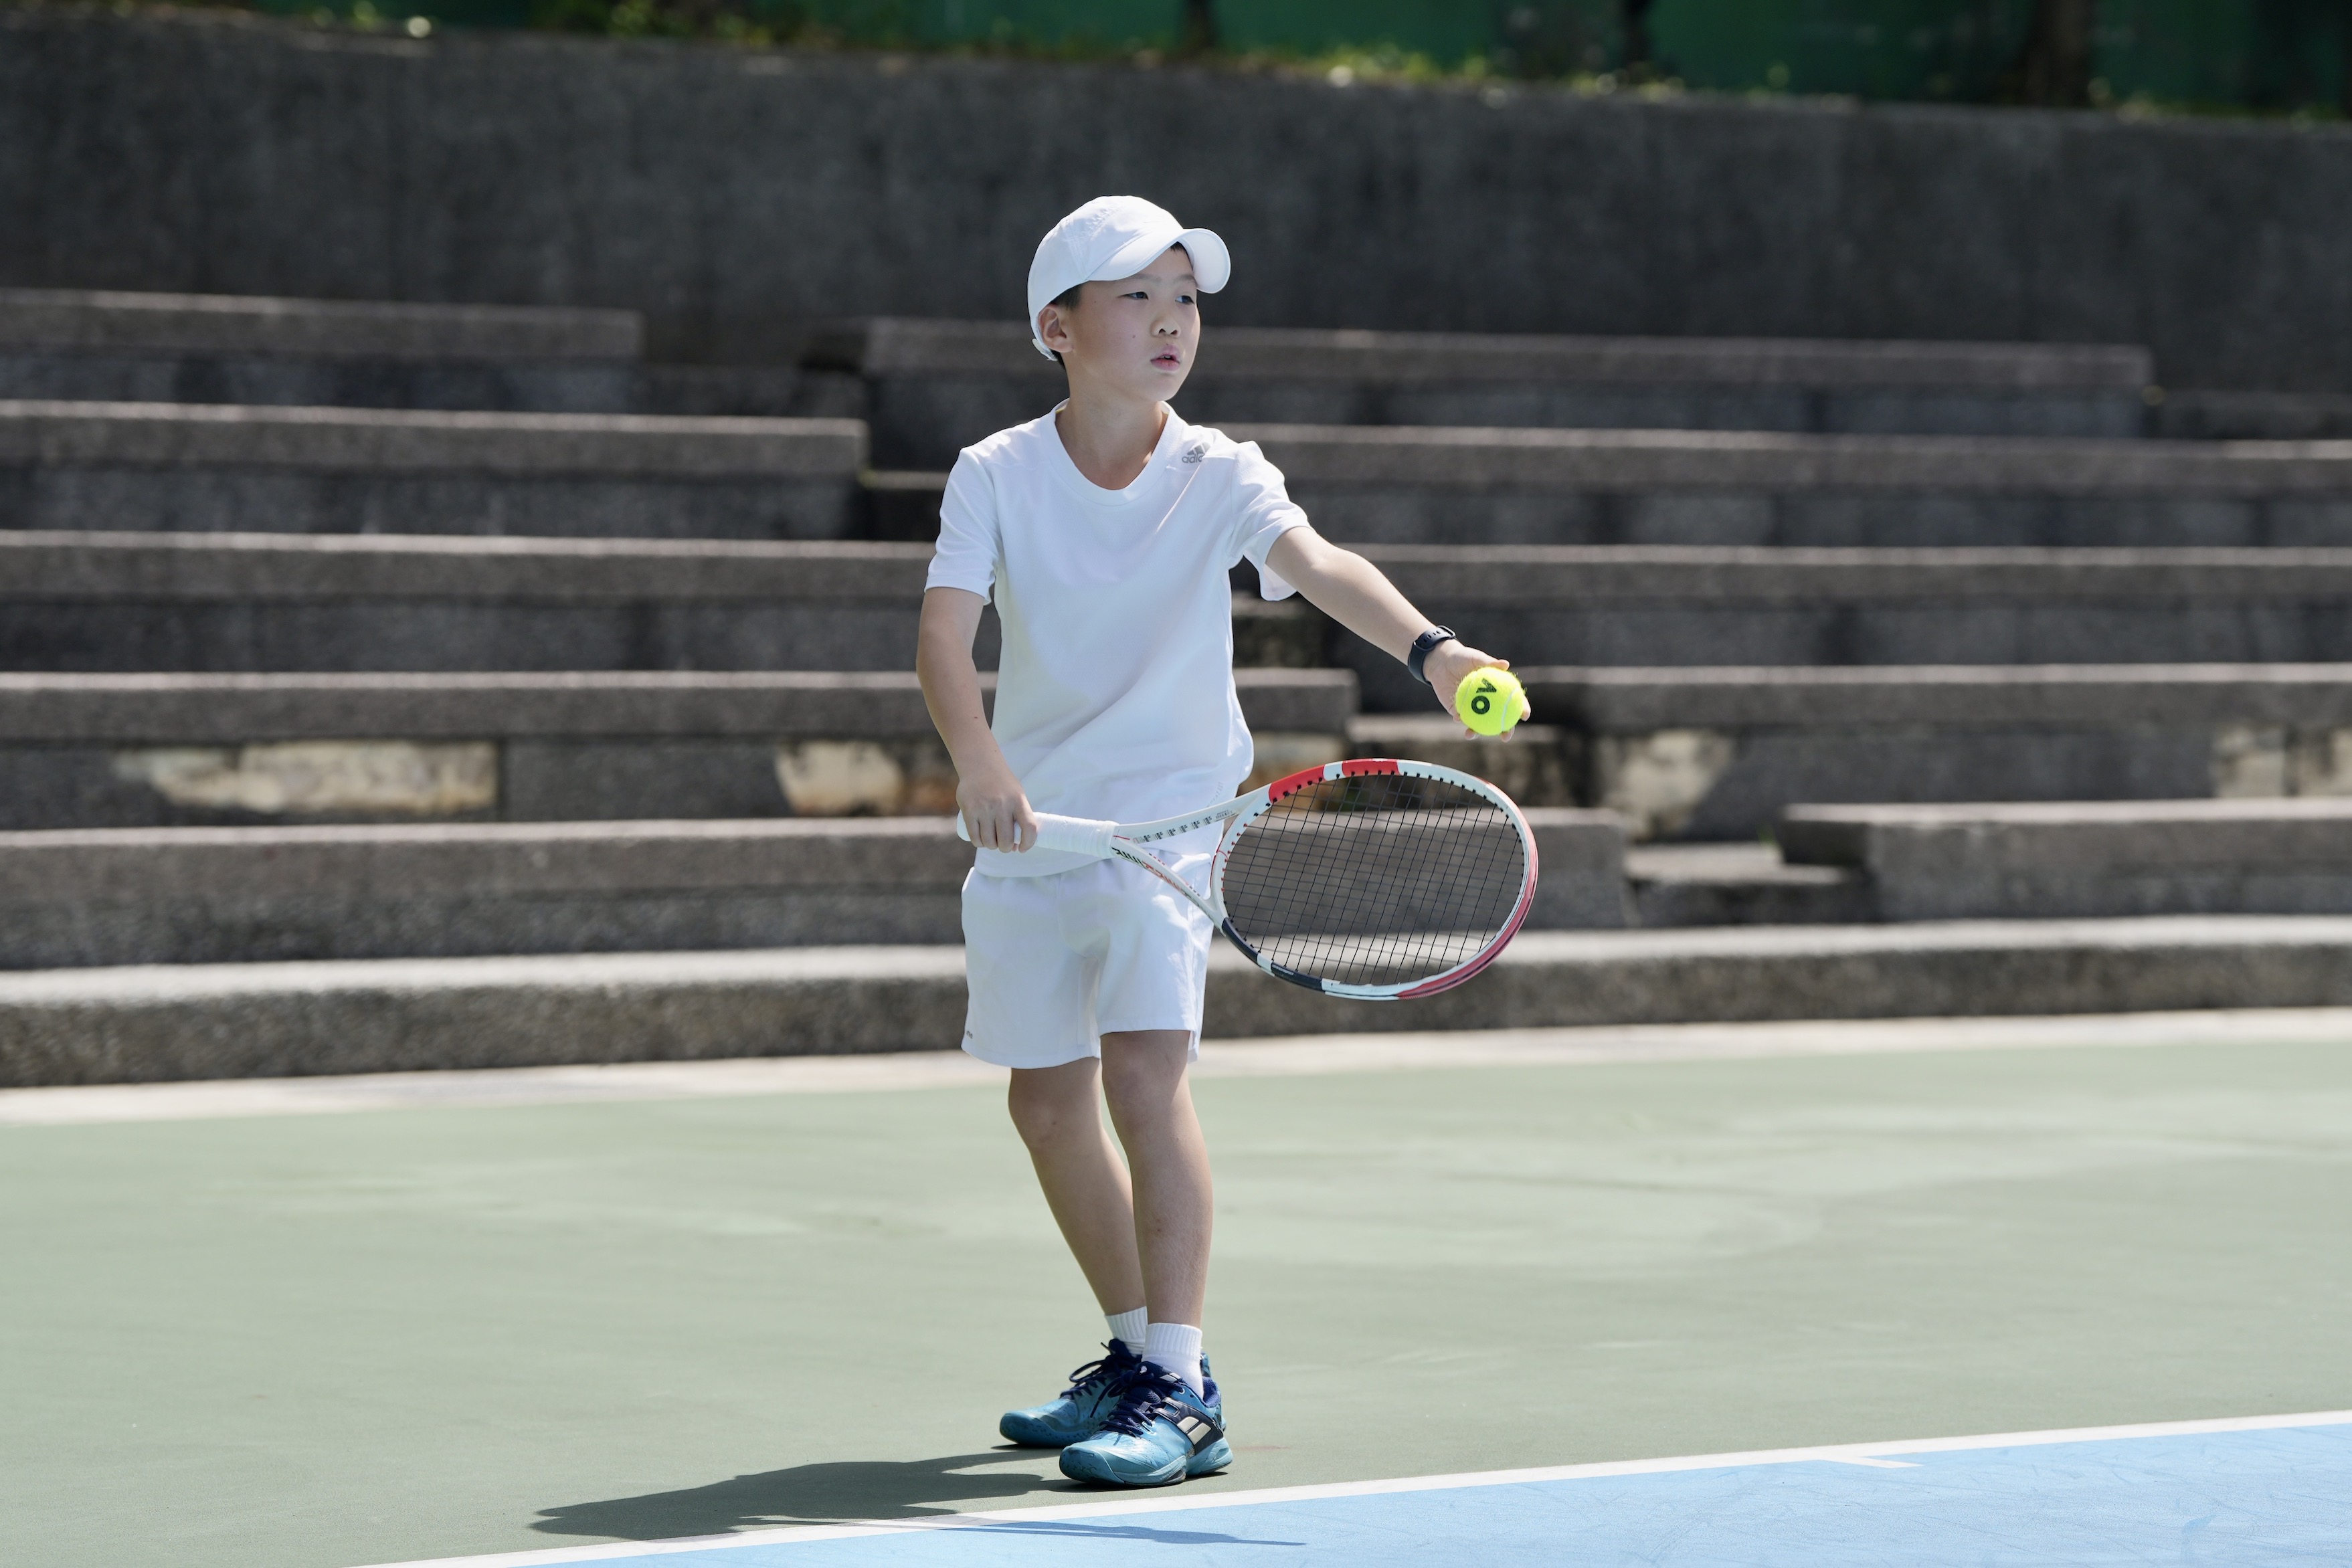 翰可國際青少年網球錦標賽今天在安樂社區網球場登場。基隆市青少年網球運動發展協會提供